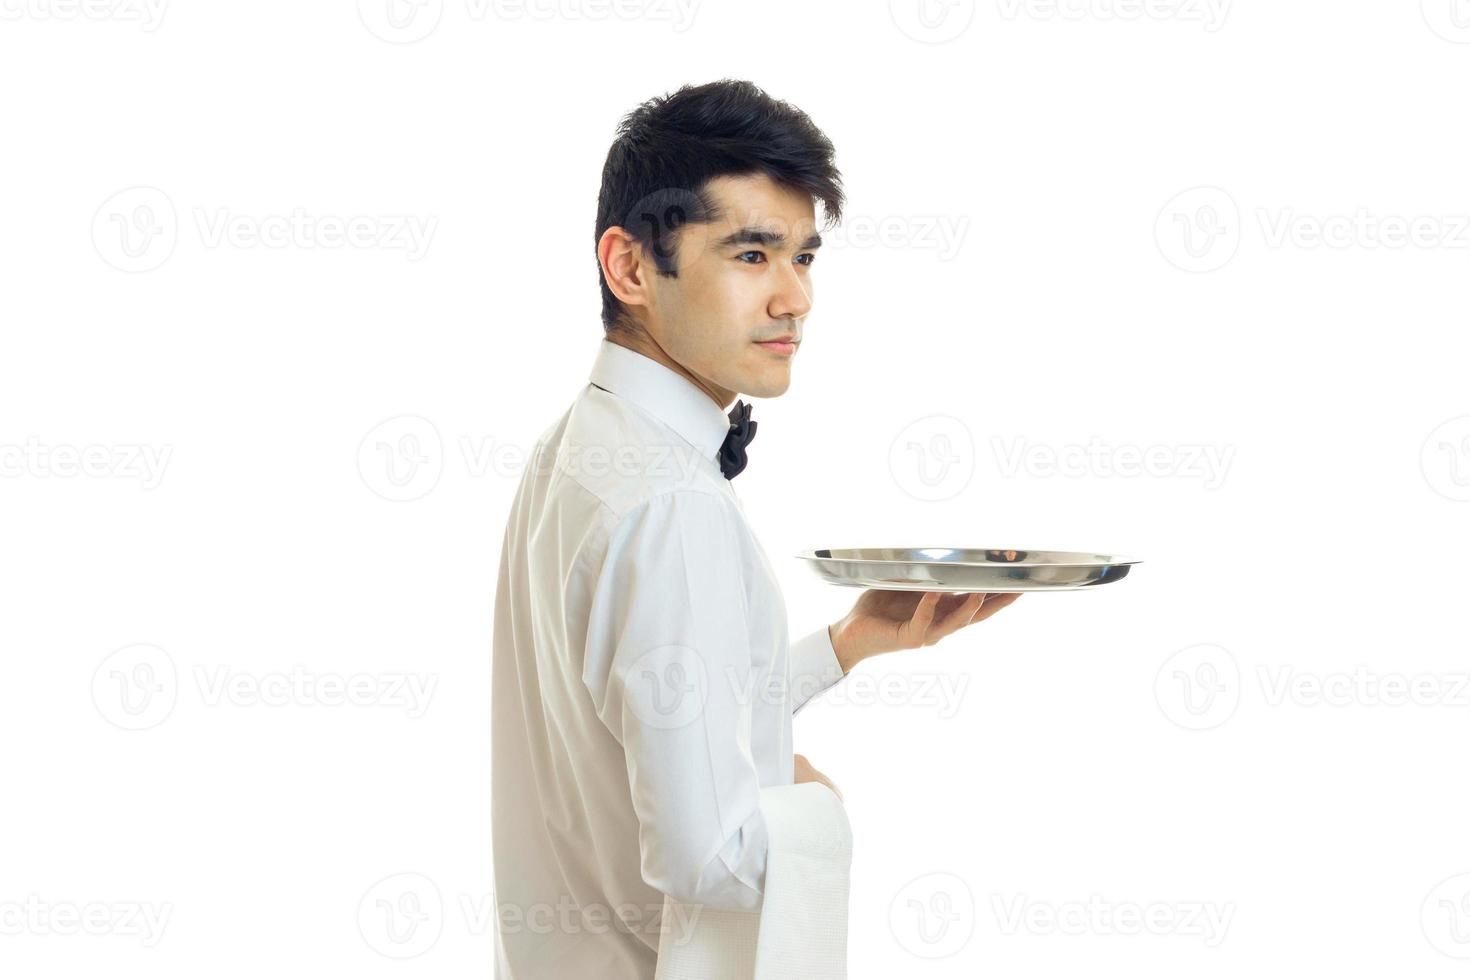 der junge kellner mit schwarzen haaren und weißem hemd steht seitwärts und hält das leere tablett in der hand foto